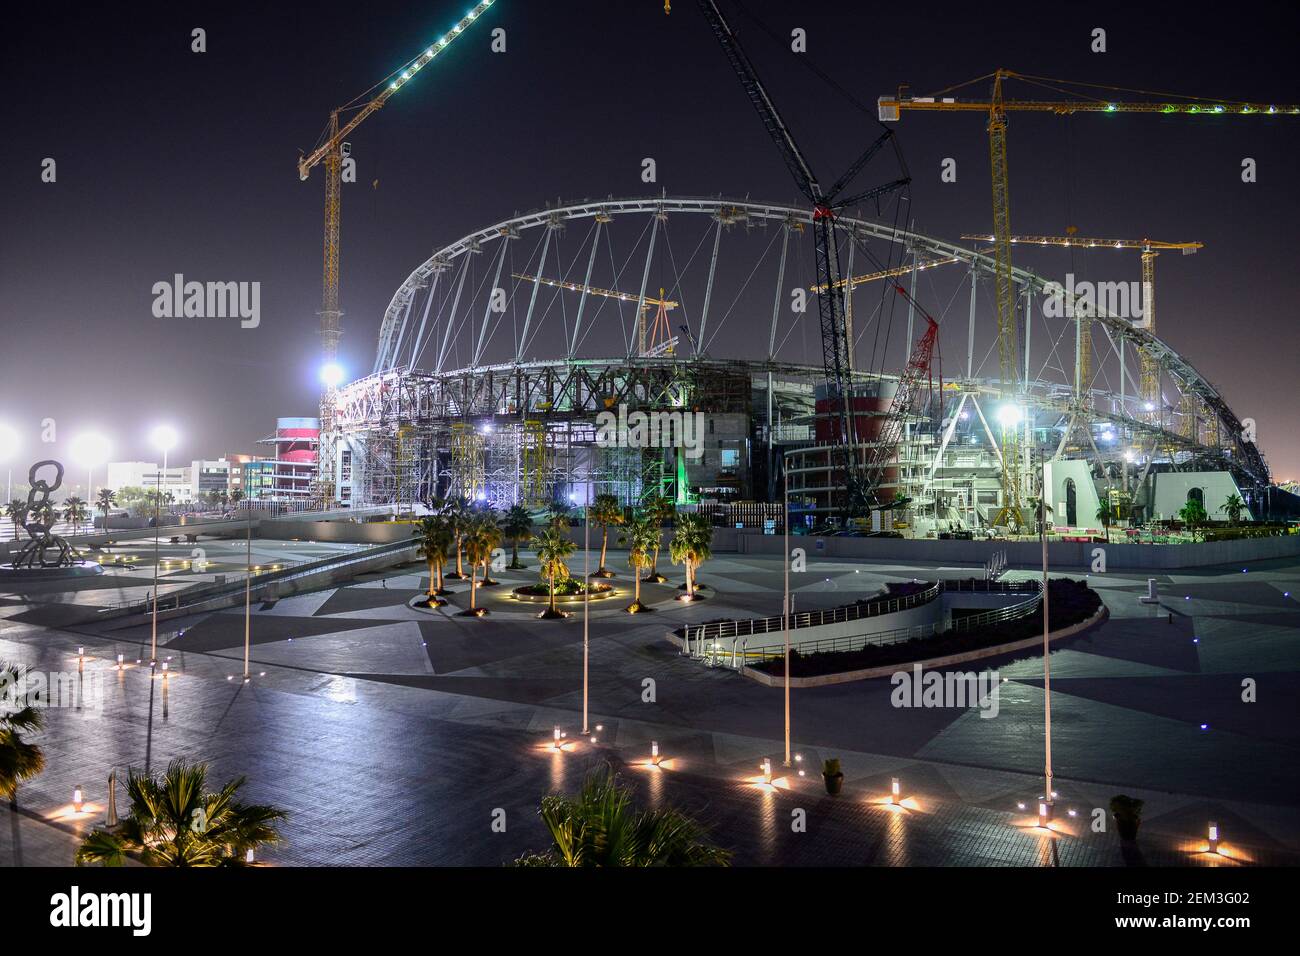 KATAR, Doha, Baustelle Khalifa International Stadium fuer die  FIFA WM Fussball Weltmeisterschaft 2022, auf den Baustellen arbeiten Gastarbeiter aus aller Welt / QATAR, Doha, construction site Khalifa International Stadium for FIFA world cup 2022, built by contractor midmac and sixt contract Stock Photo